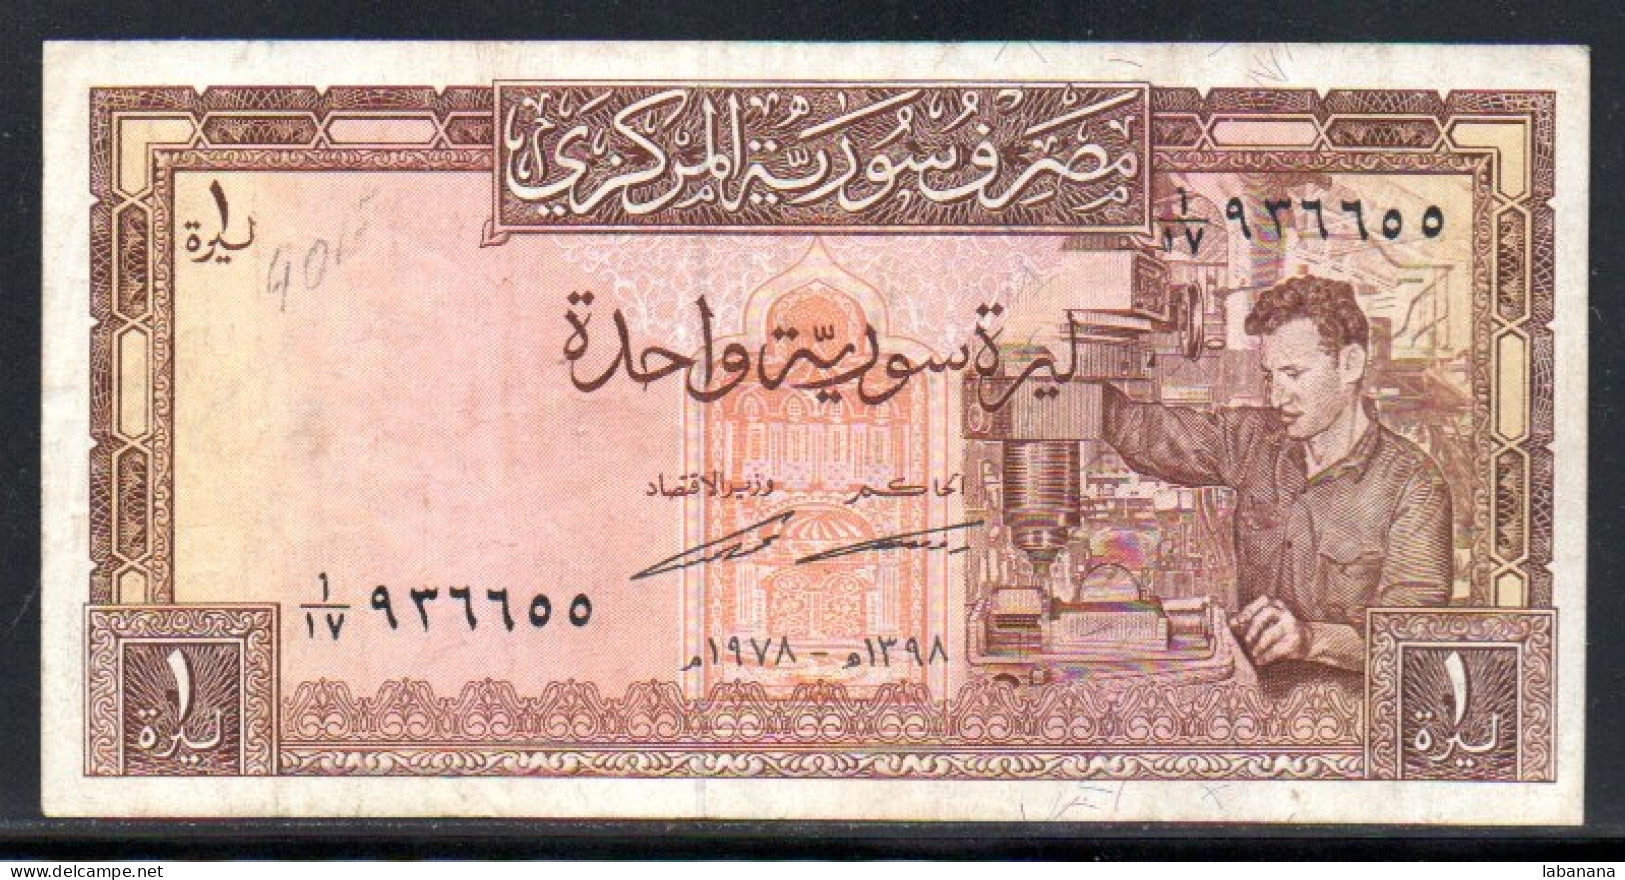 659-Syrie 1 Pound 1978 - Syria